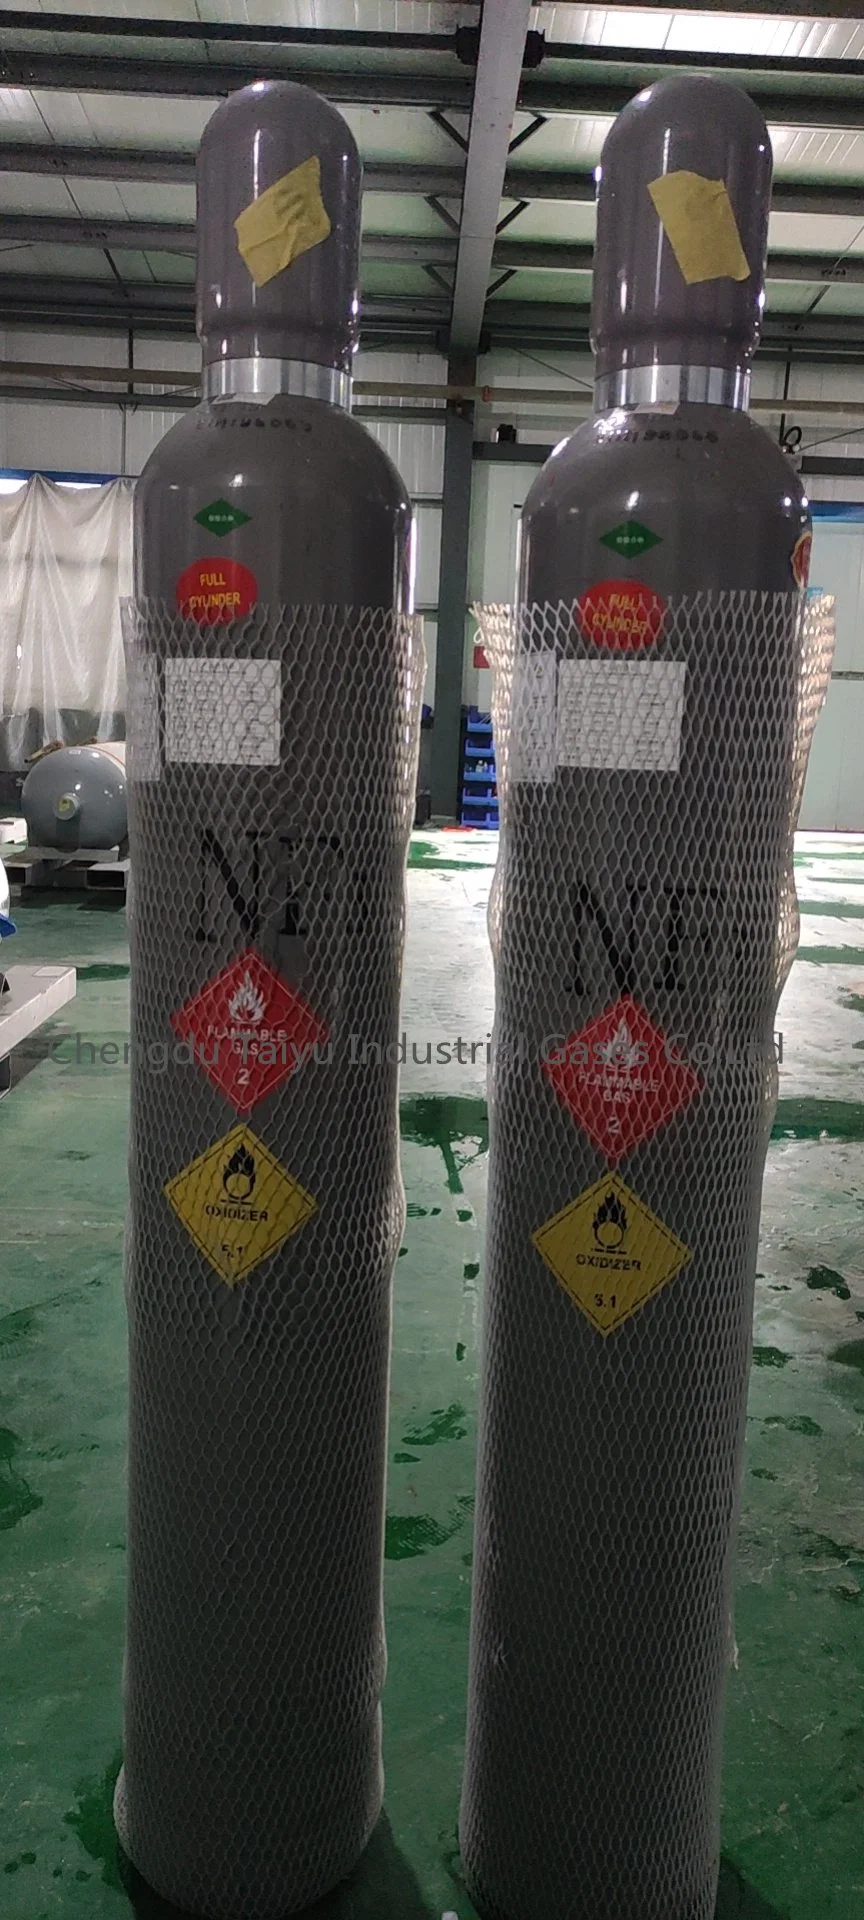 Cylindre 47L de gaz de qualité électronique 99.99 % d'azote liquide trifluorure NF3